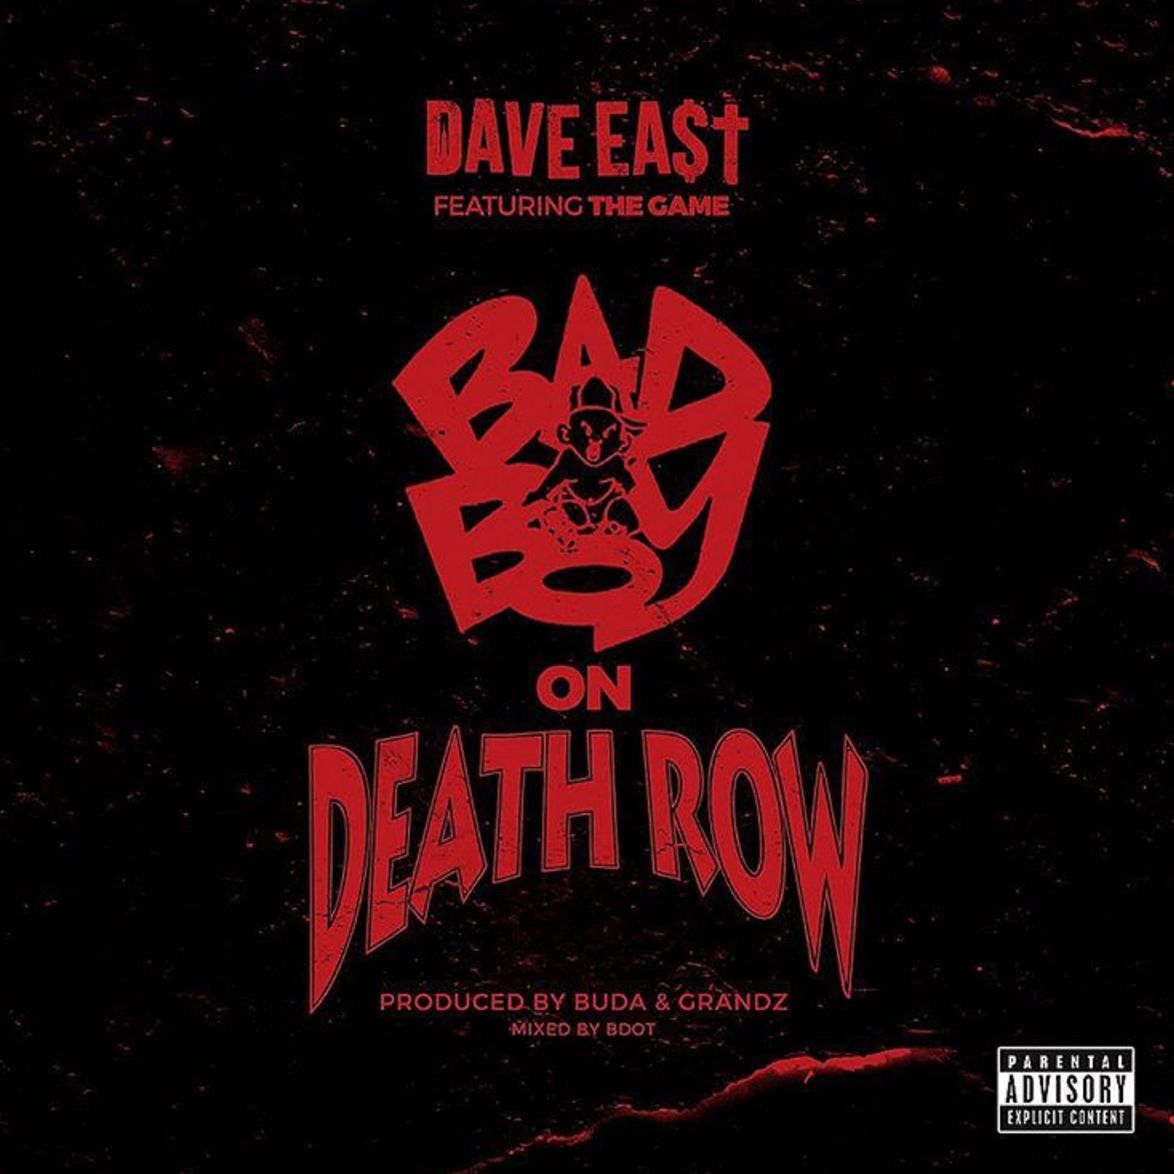 Dave East – Bad Boy on Death Row